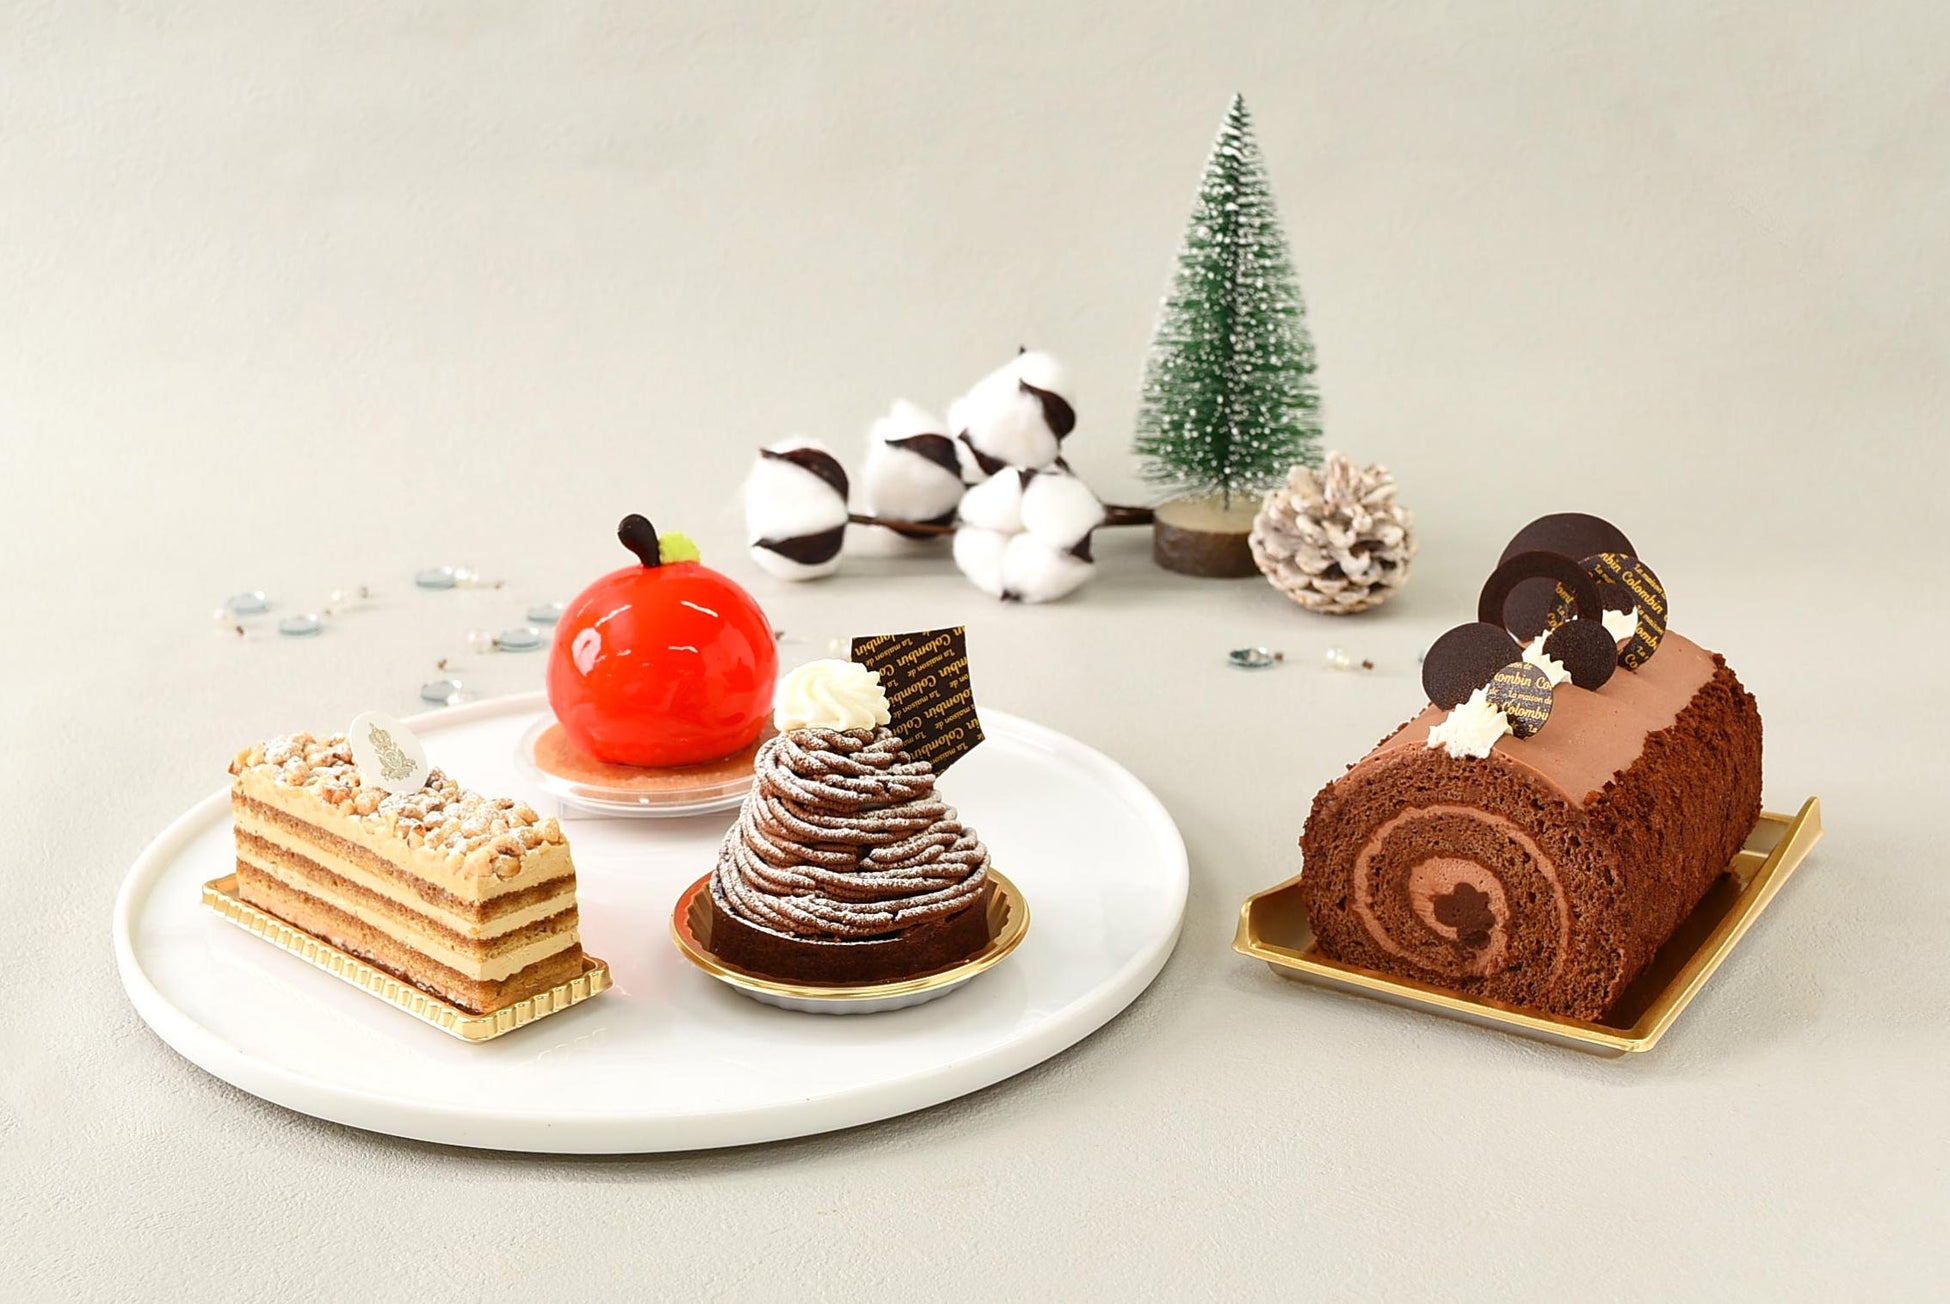 ブルボン、チョコづくしのバータイプチョコケーキ
「もっと濃厚チョコブラウニー」を
11月7日(火)に期間限定で販売開始！